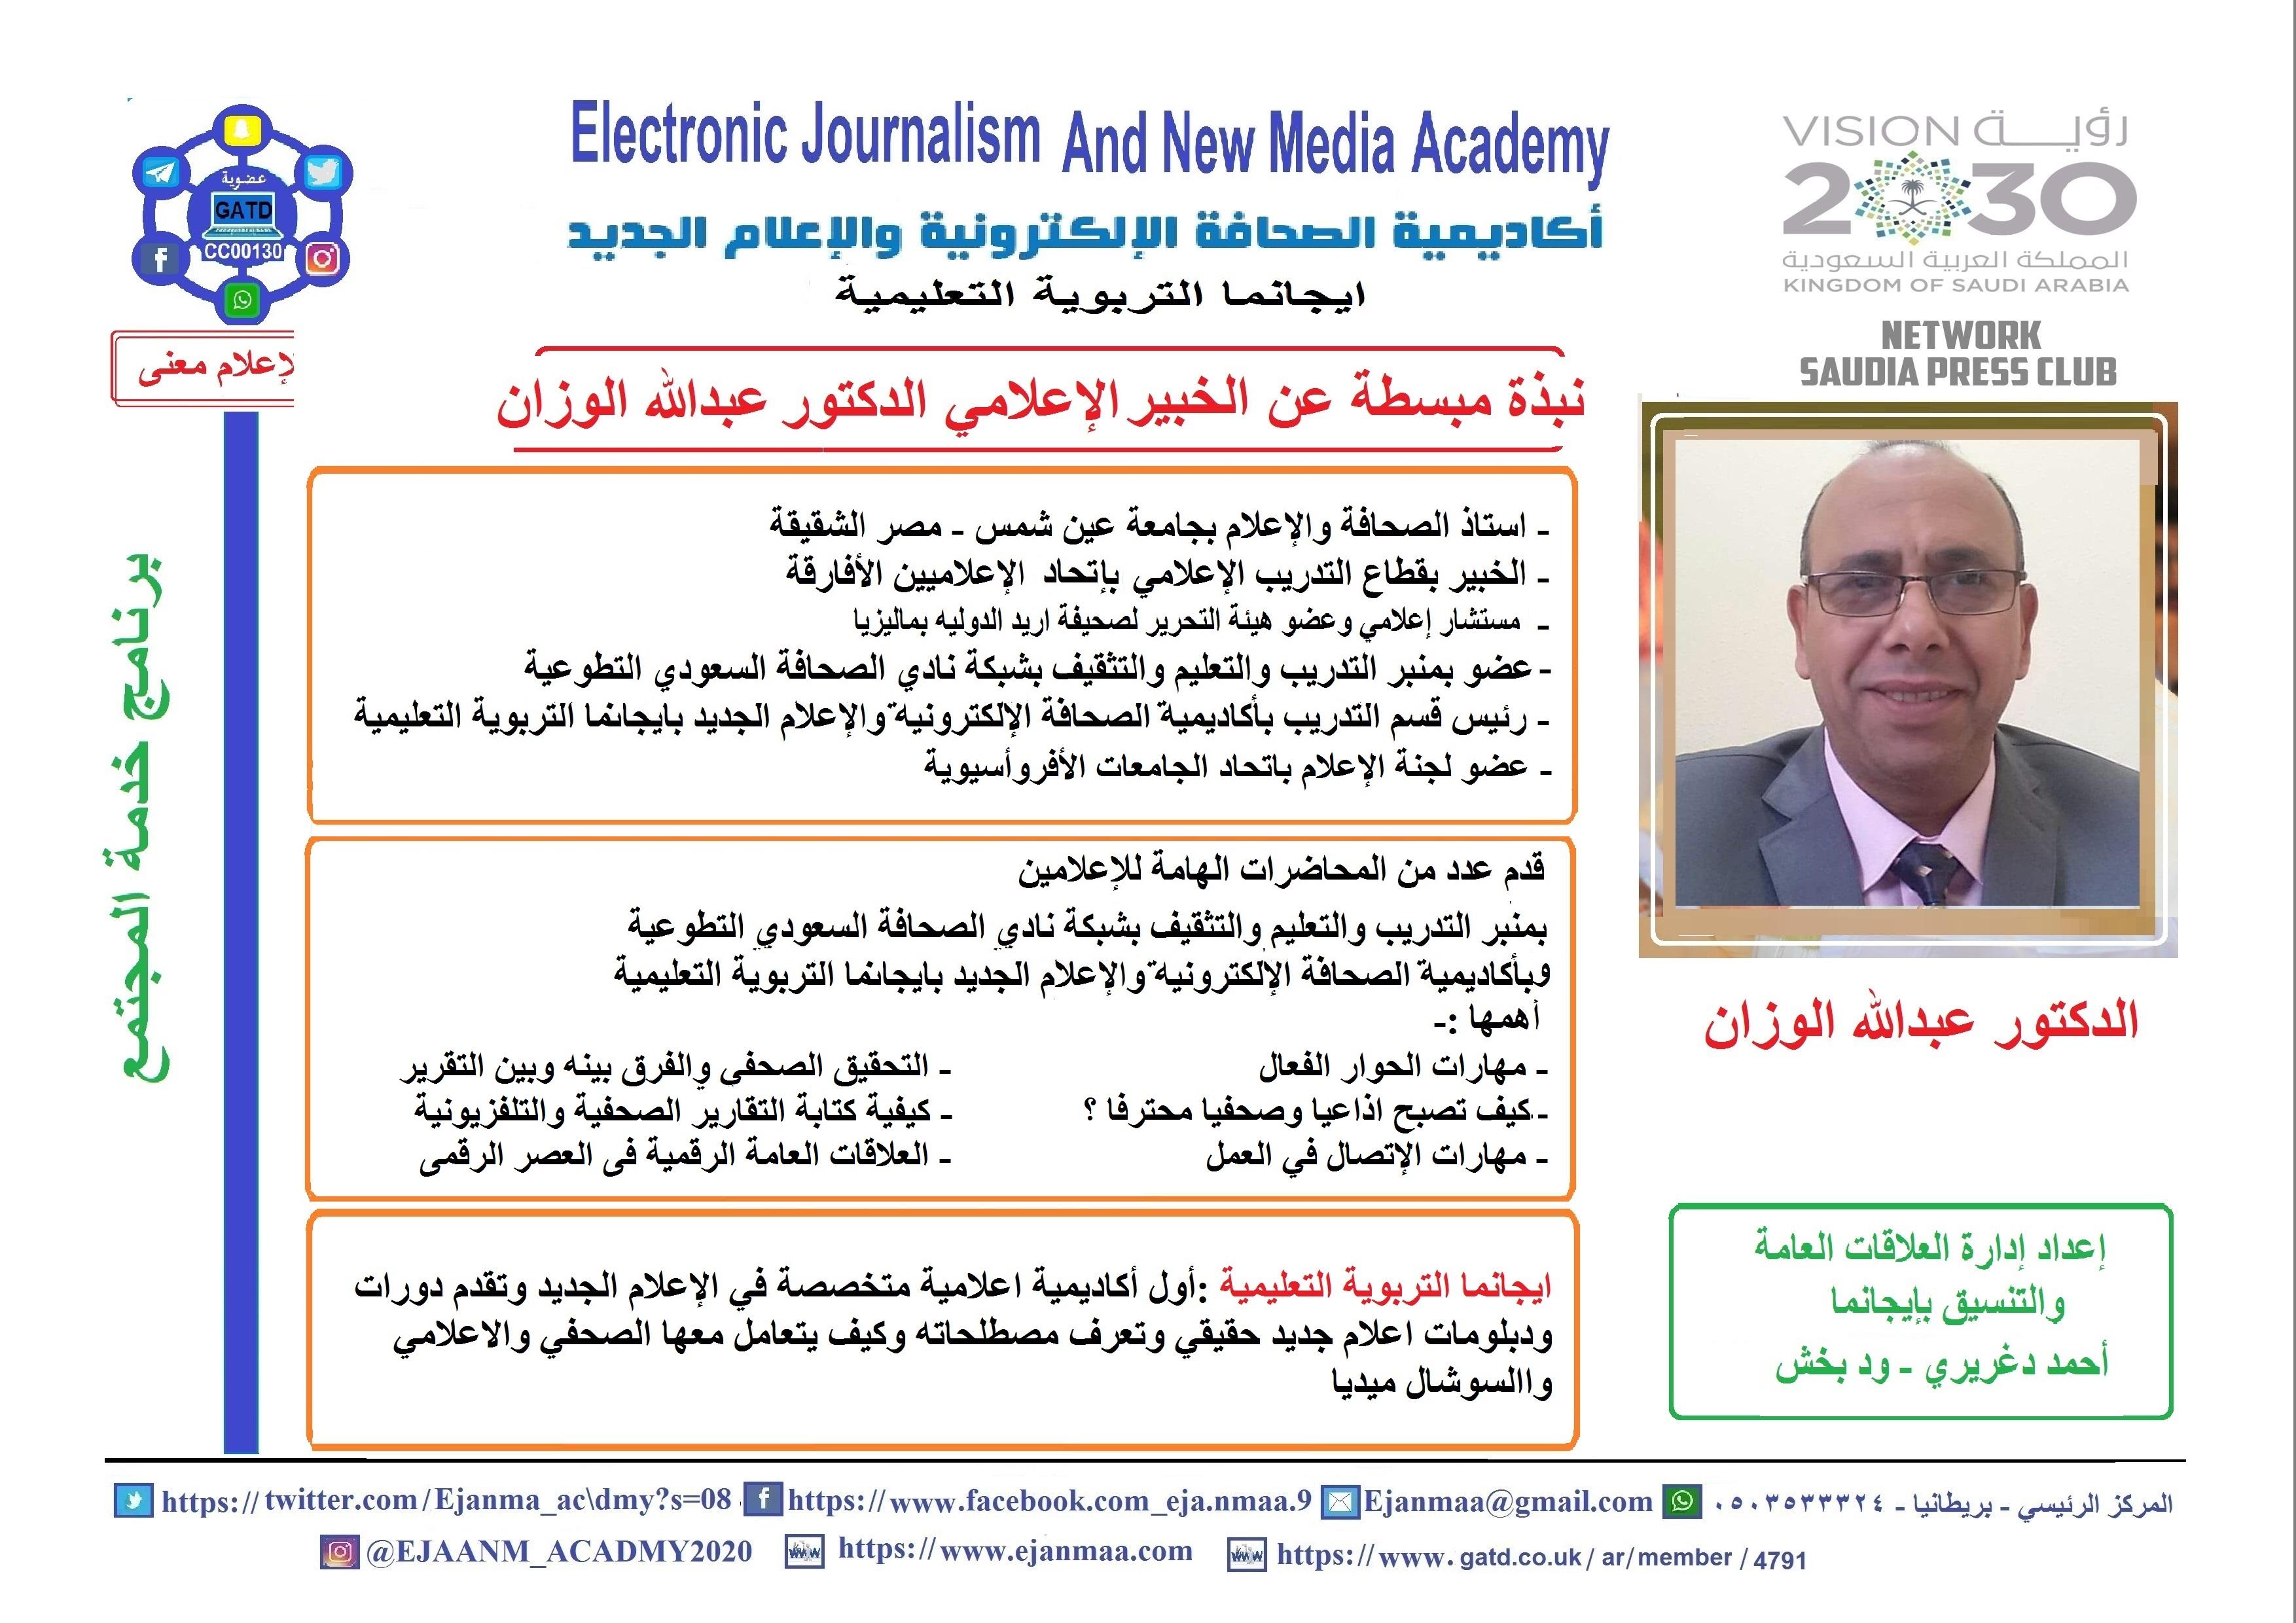 ايجانما الاعلامية تقدم محاضرة اعلامية بعنوان (مهارات الاتصال فى بيئة العمل) يستفيد منها اكثر من 600 اعلامي سعودي وعربي